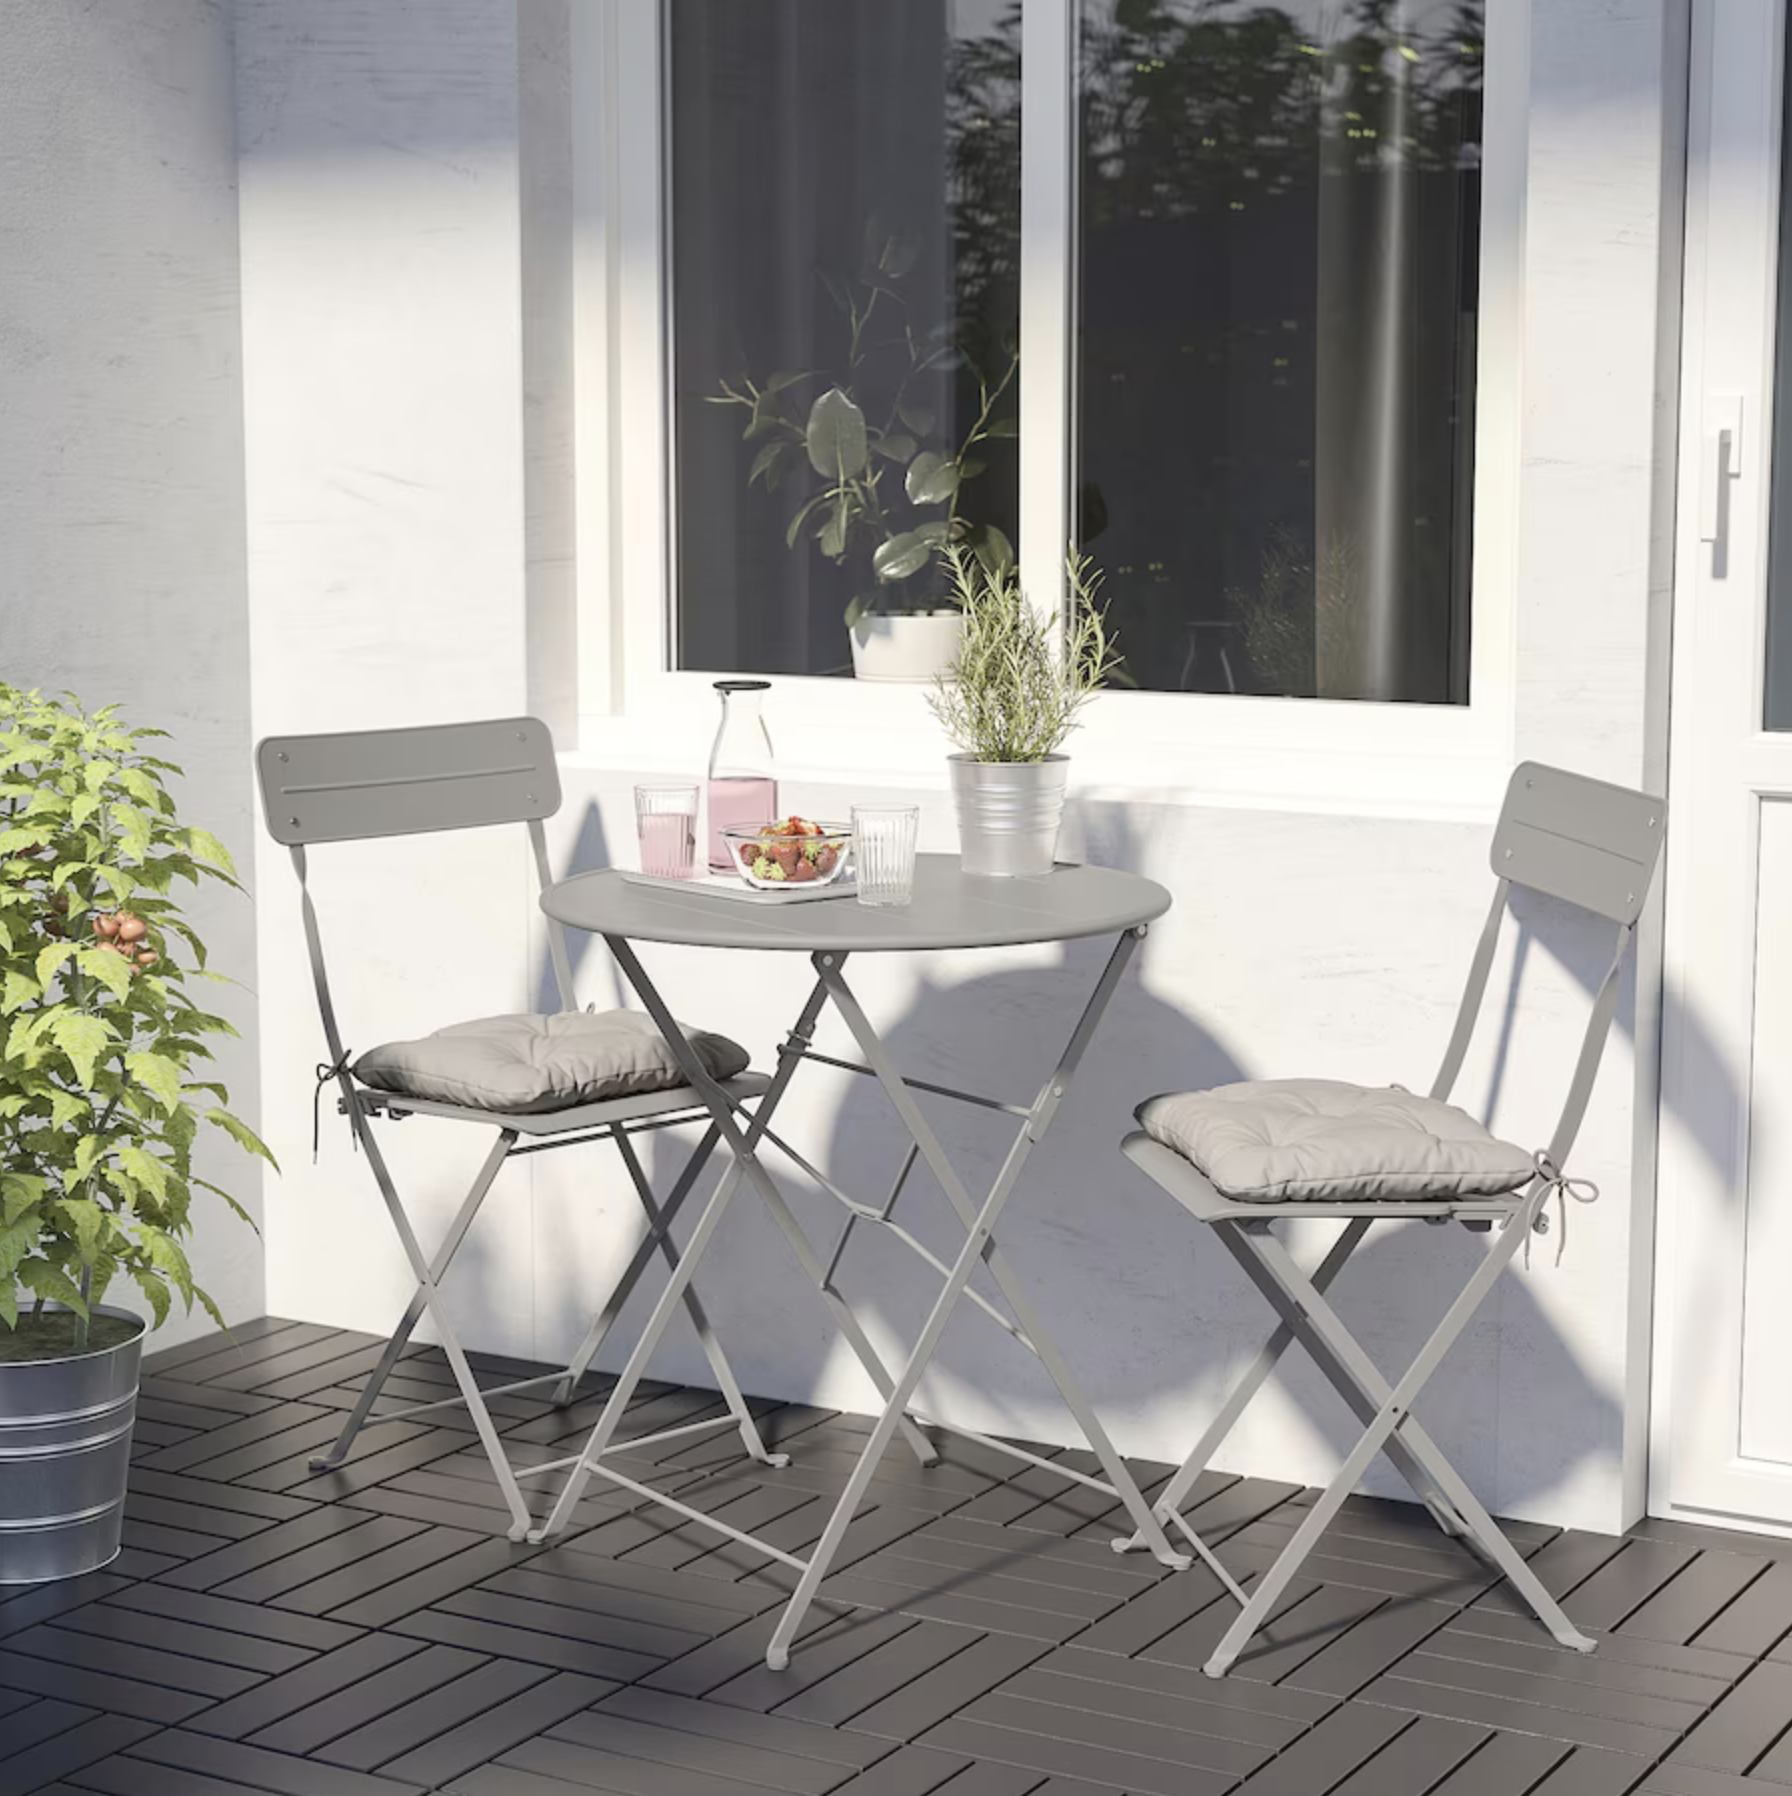 Terraza pequeña con mesa y dos sillas de exterior gris SUNDSO¨.